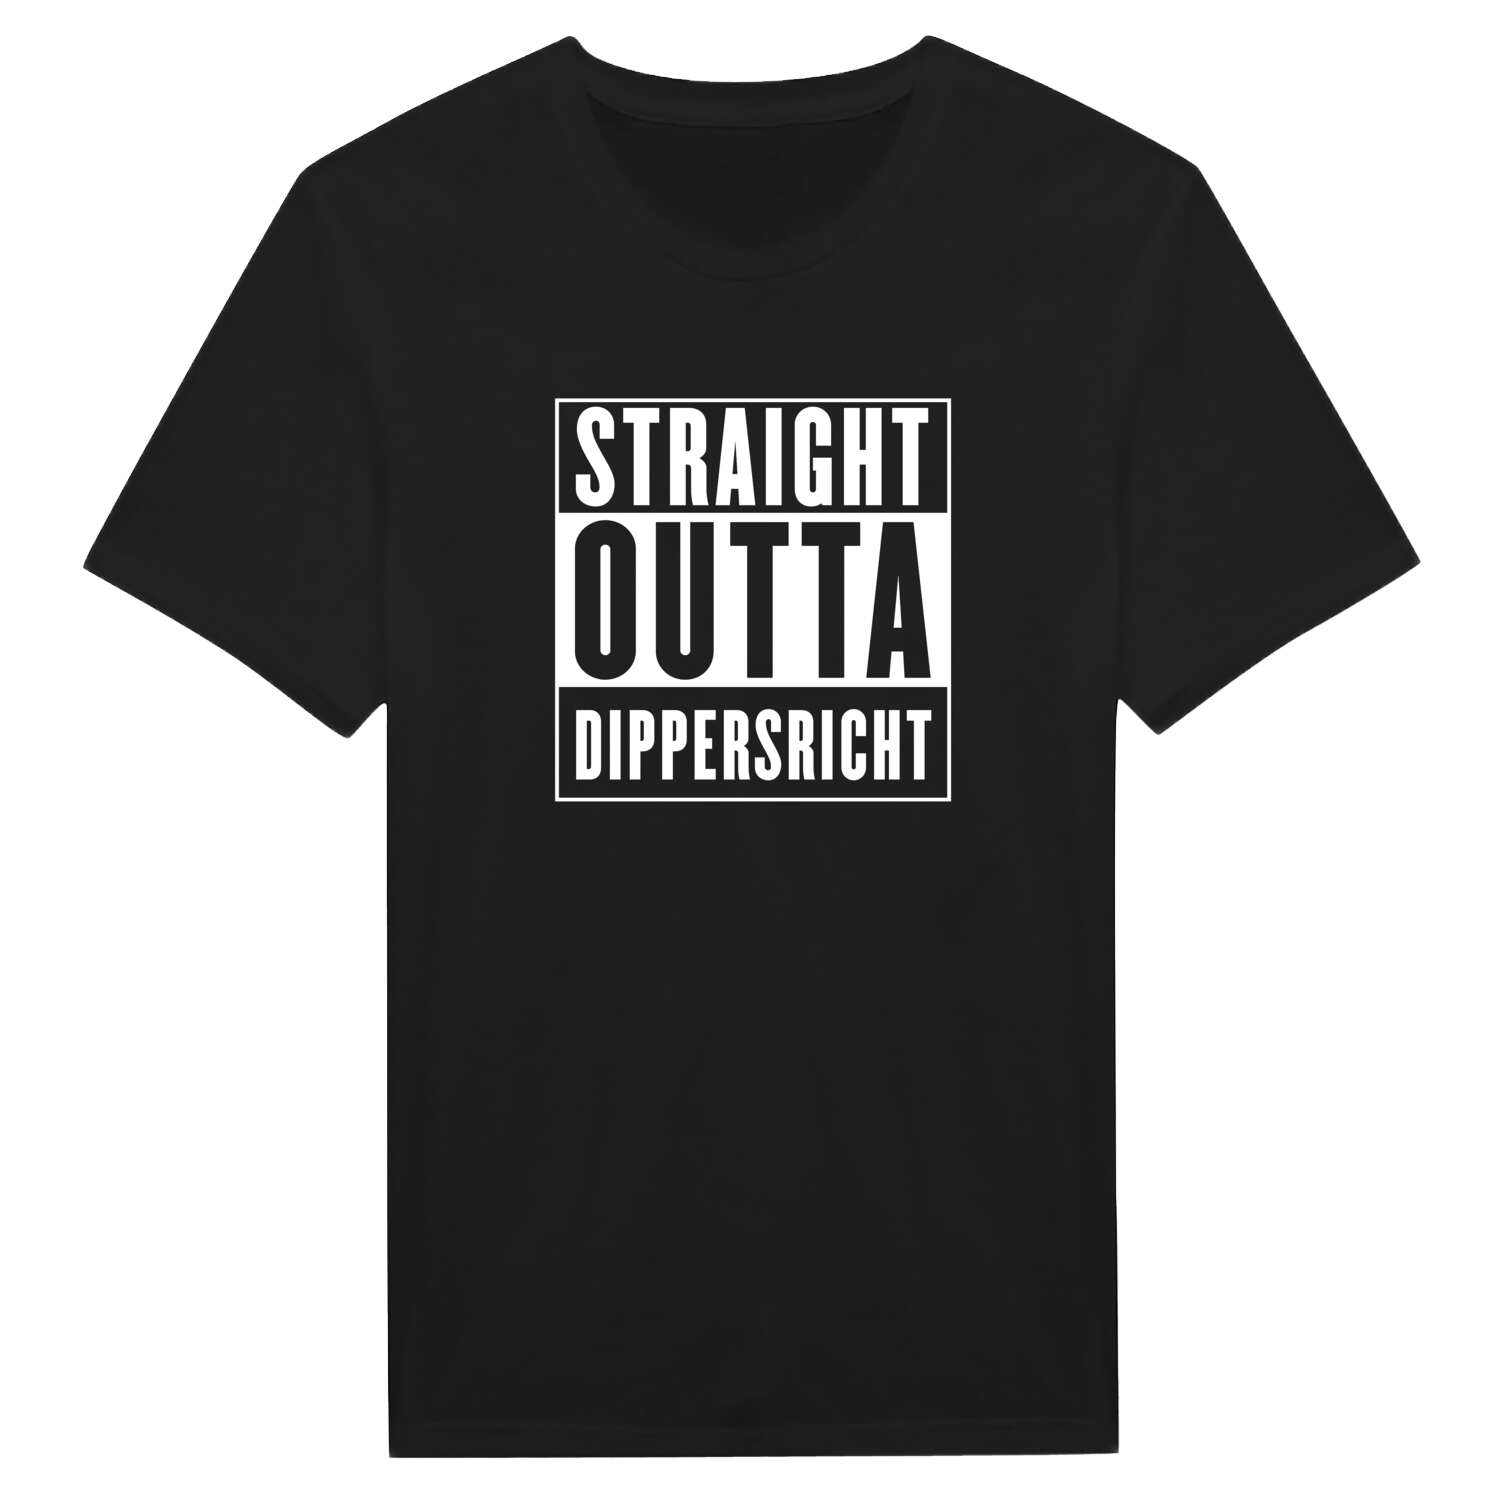 Dippersricht T-Shirt »Straight Outta«